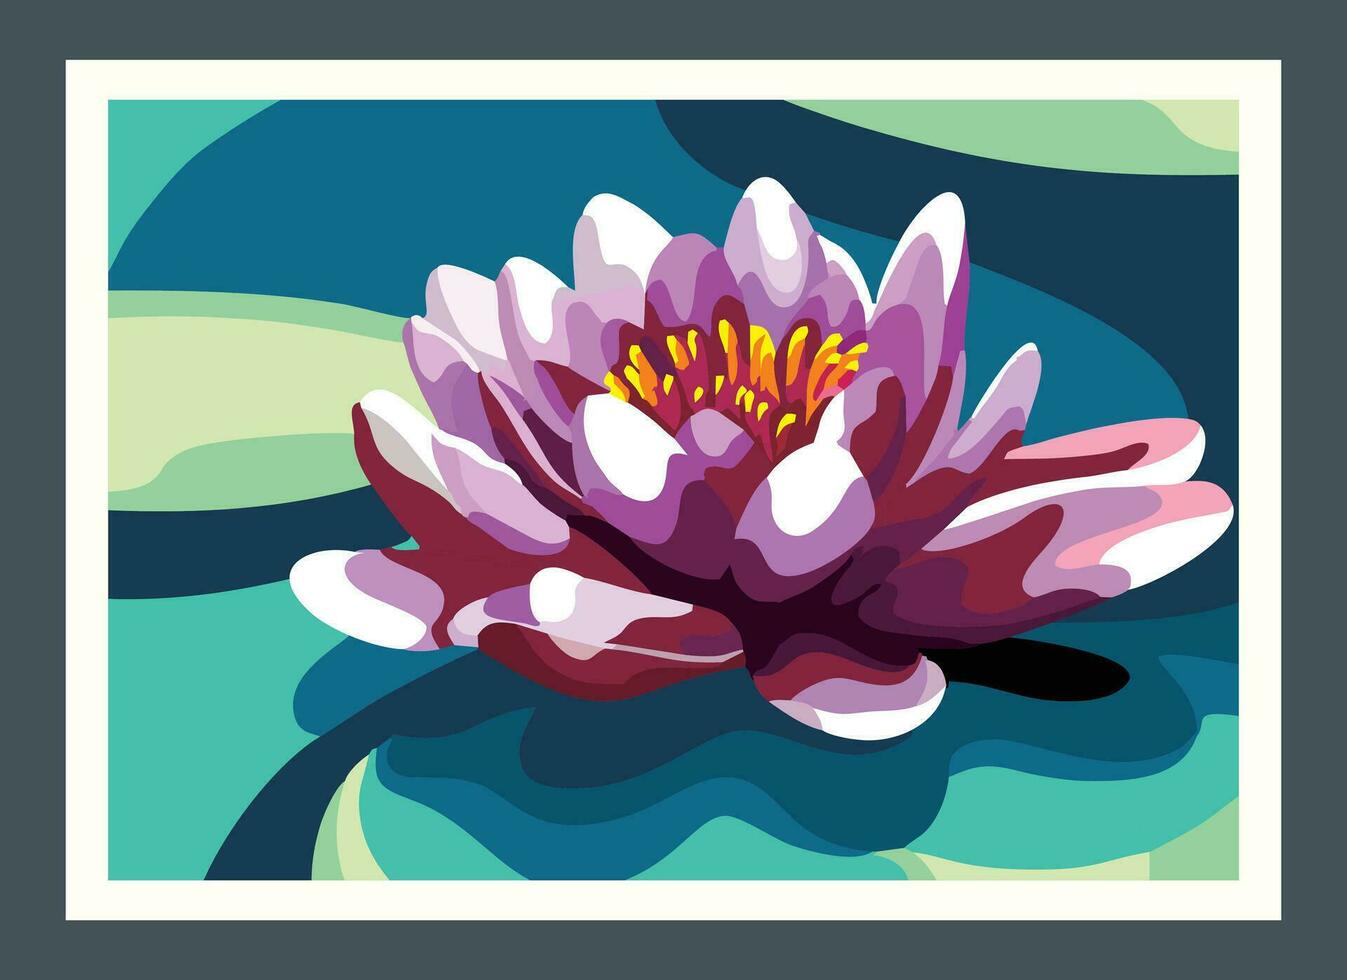 Lotus flower painting vector